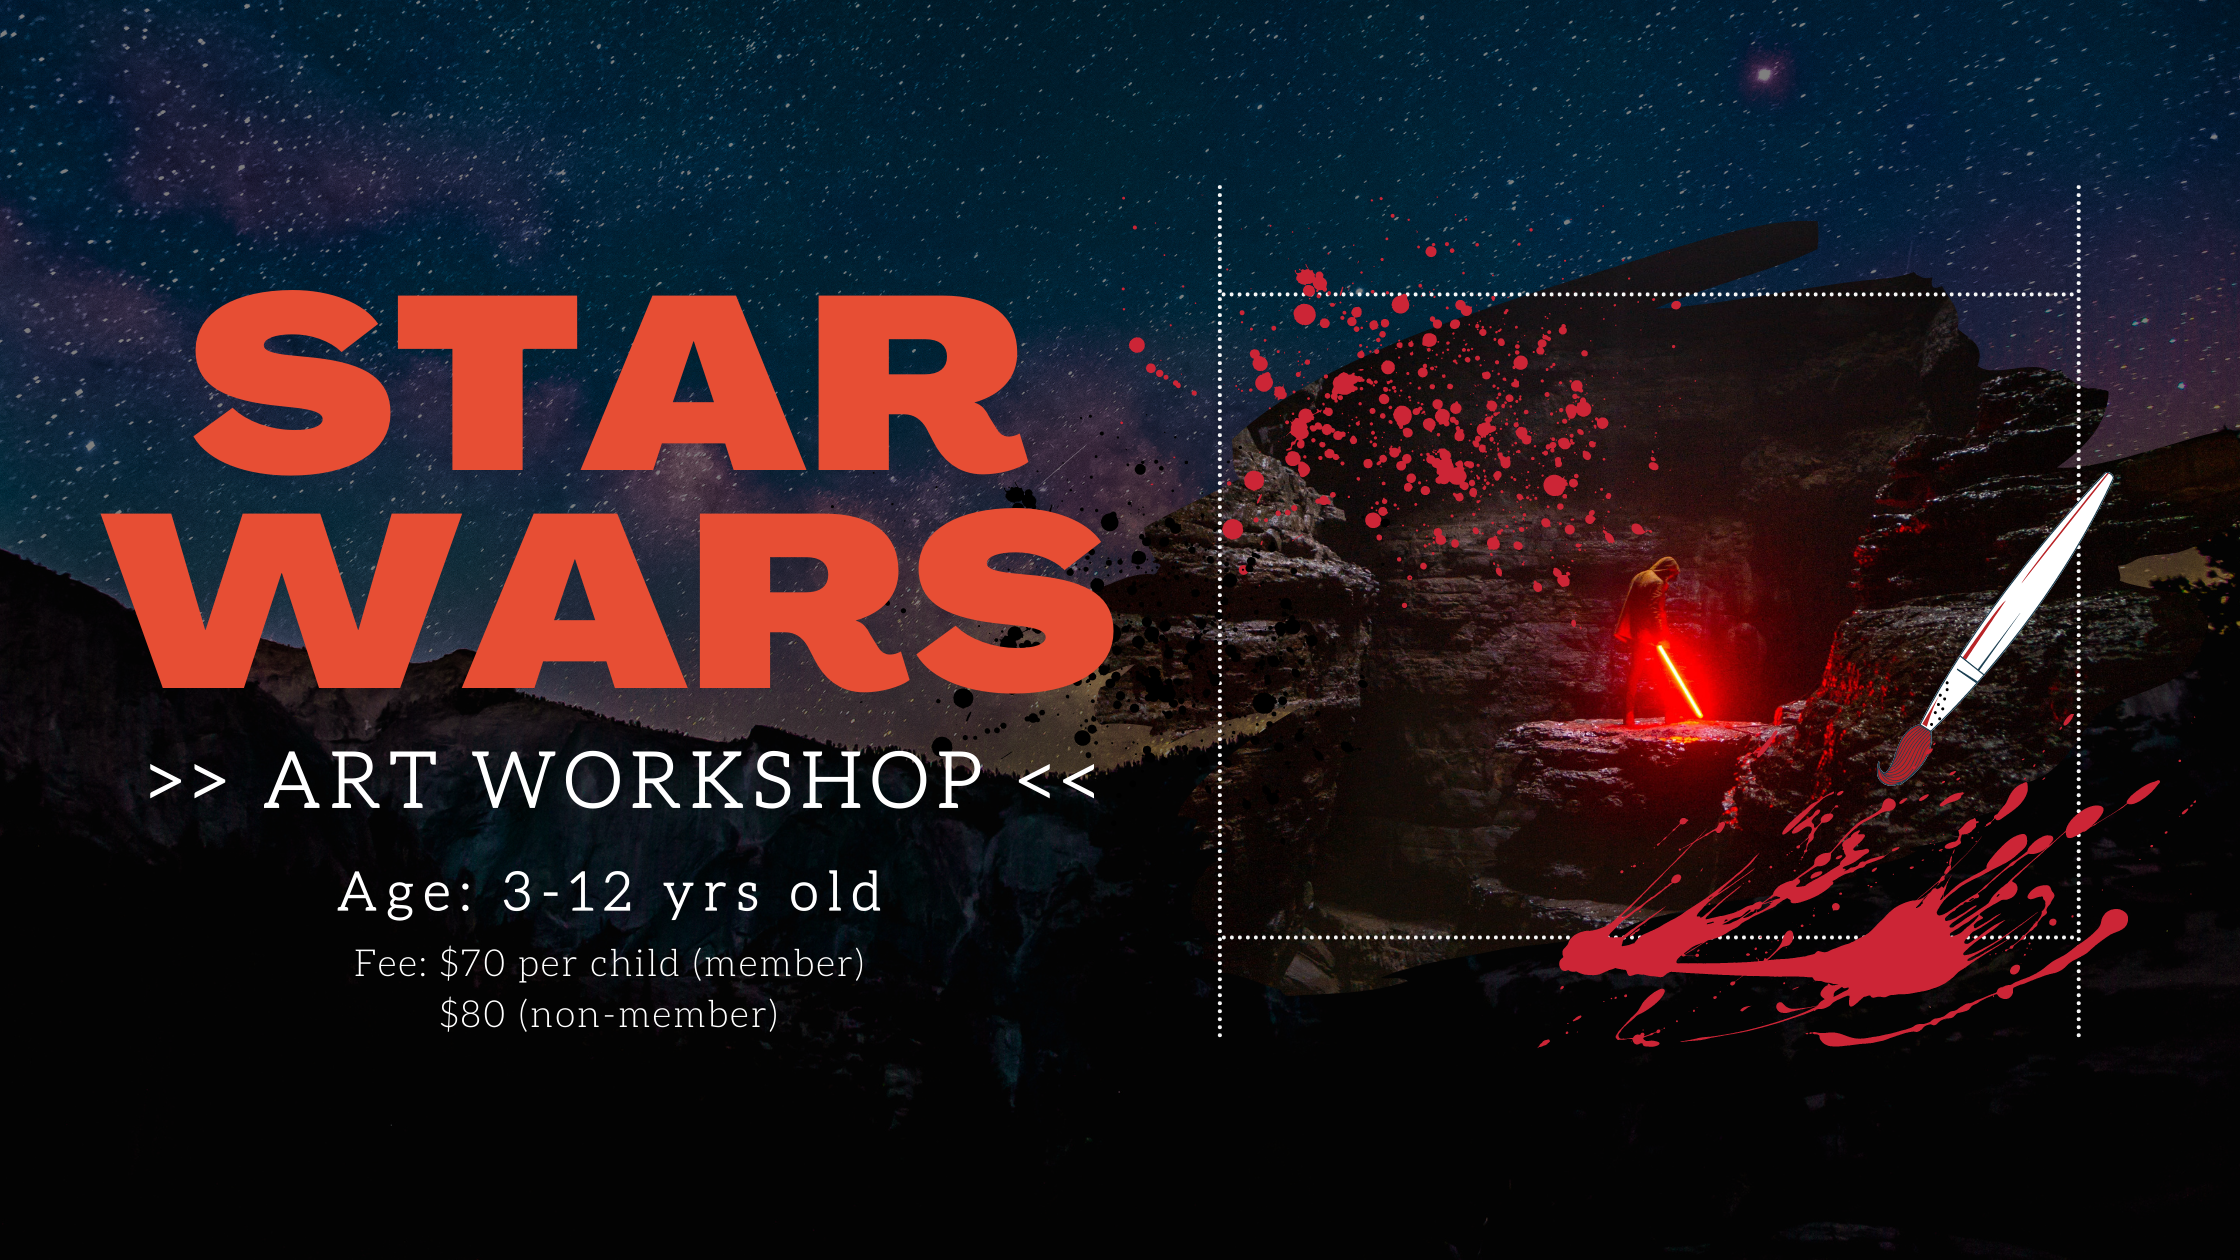 Star wars art workshop for children